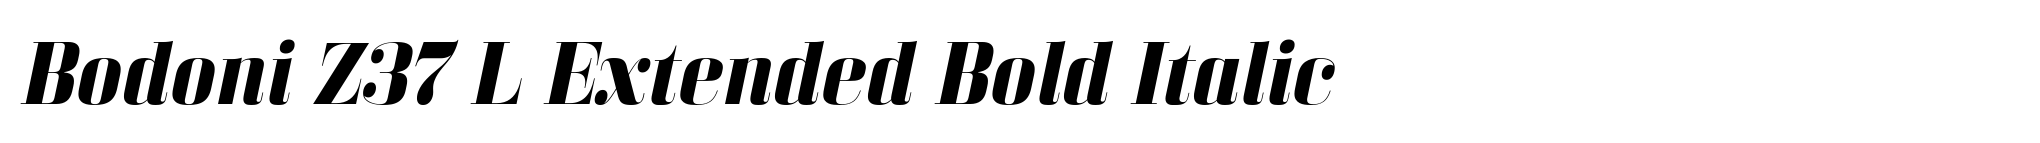 Bodoni Z37 L Extended Bold Italic image